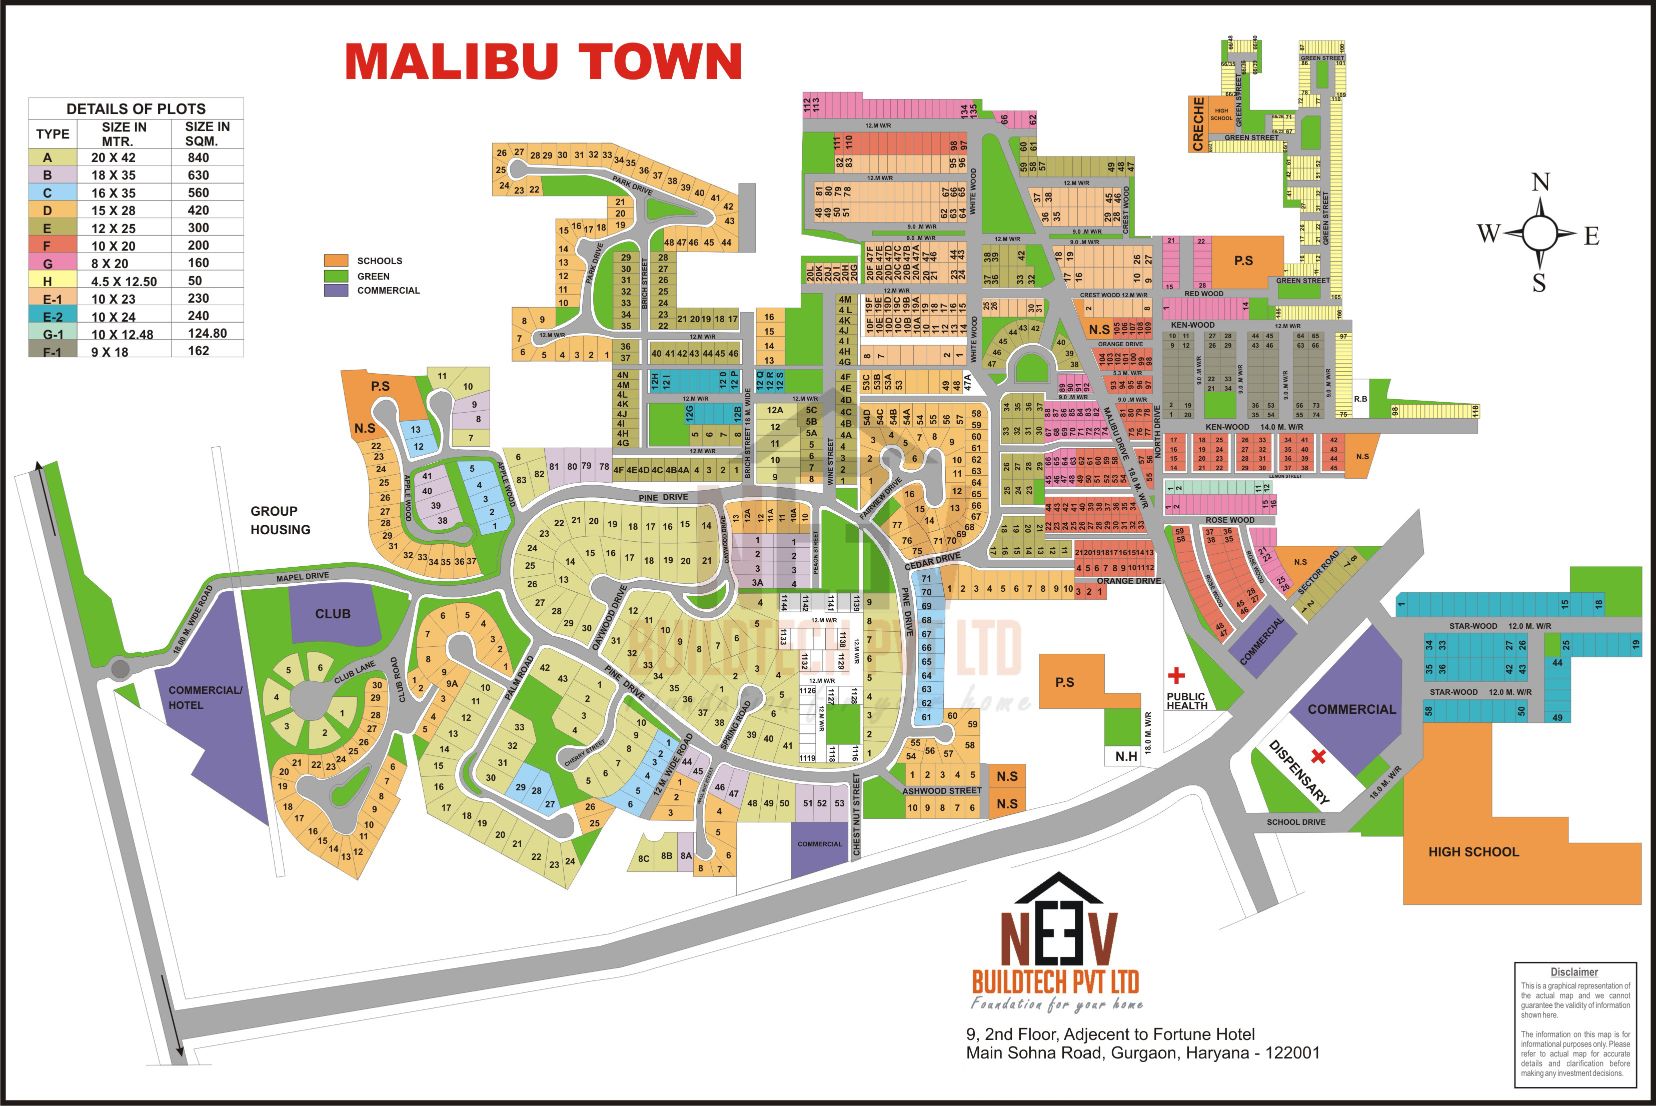 MALIBU TOWN